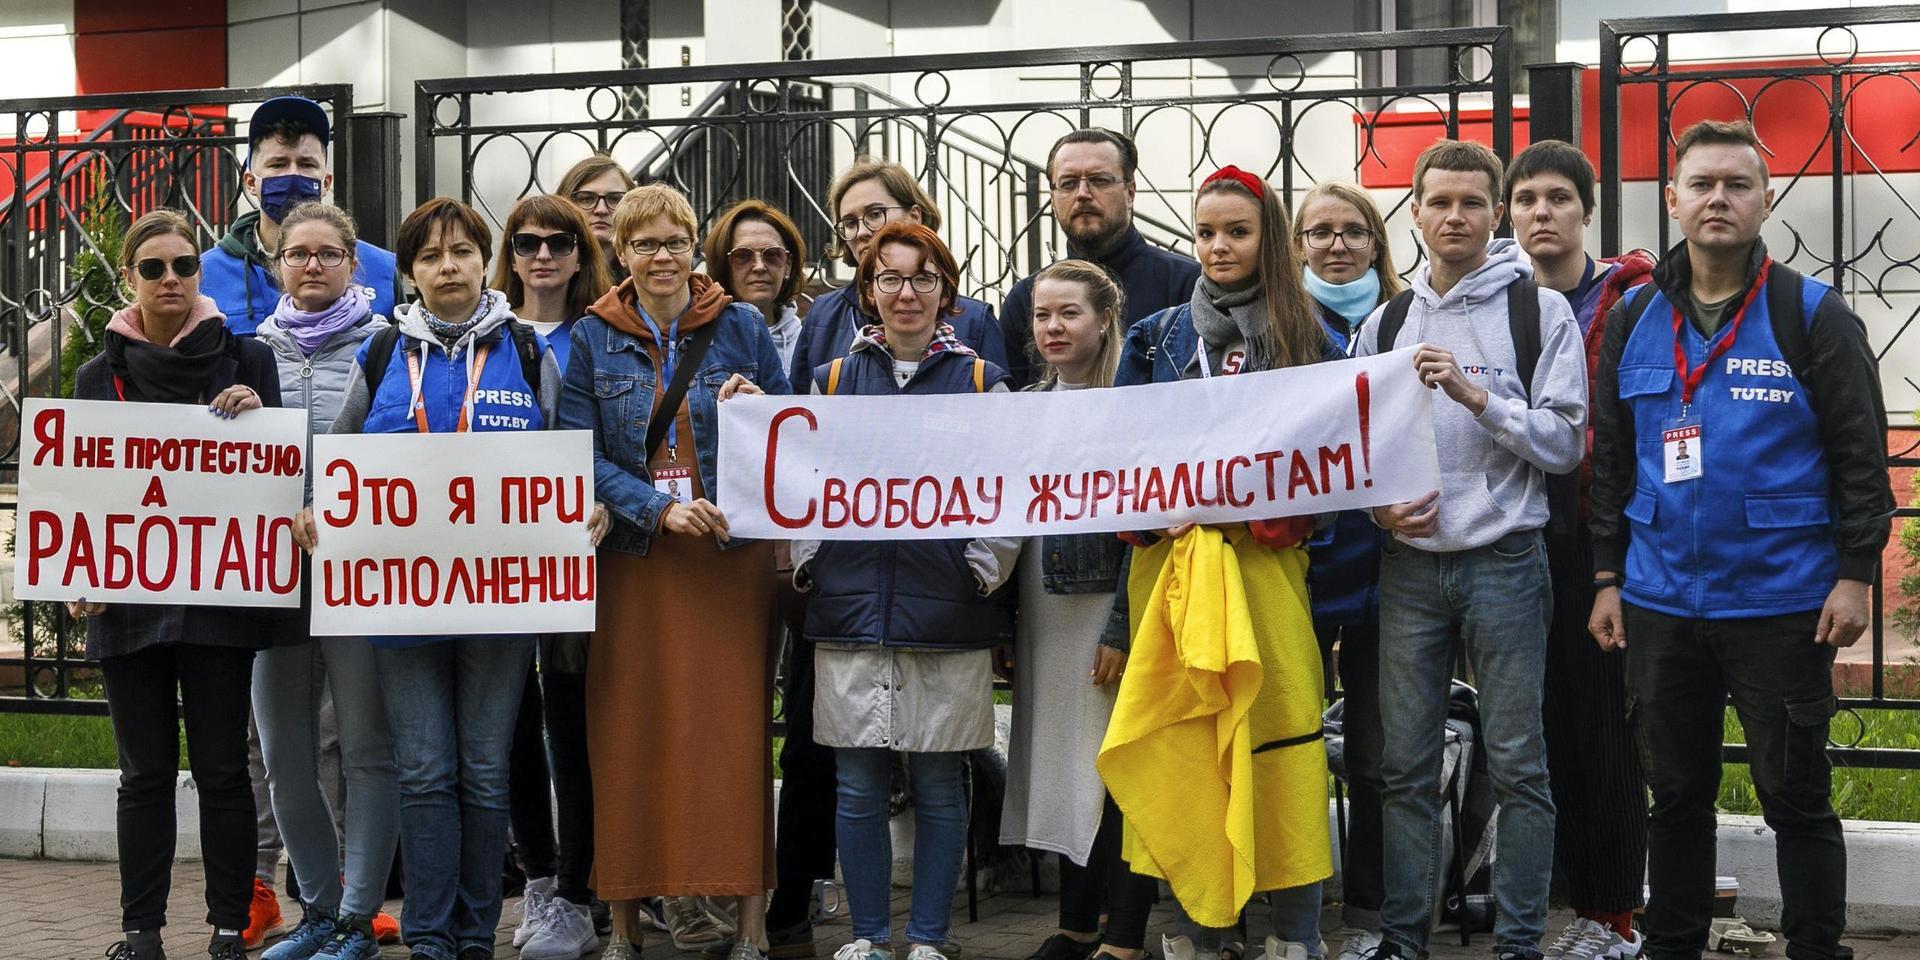 Journalister vid den belarusiska nyhetssajten Tut.by har gått i strejk och demonstrerar för pressfrihet framför en polisstation i Minsk, med anledning av att många kollegor blivit gripna. Bilden är tagen den 2 september.